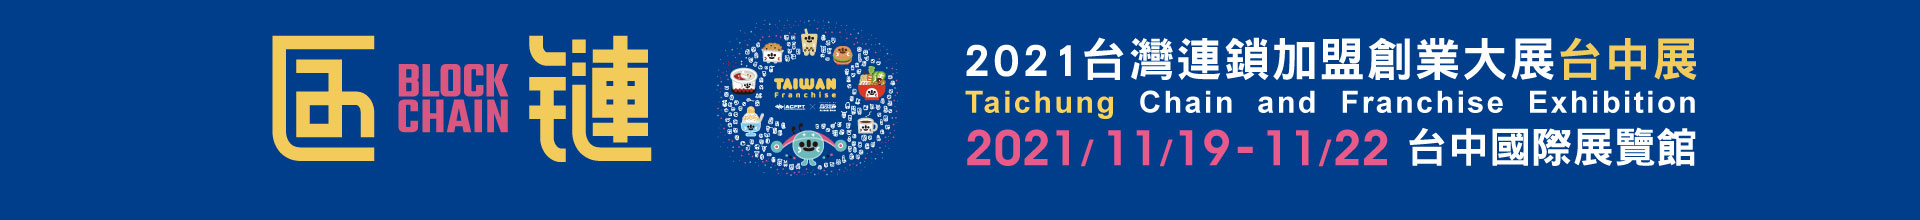 2021台北國際連鎖加盟創業展-夏季展